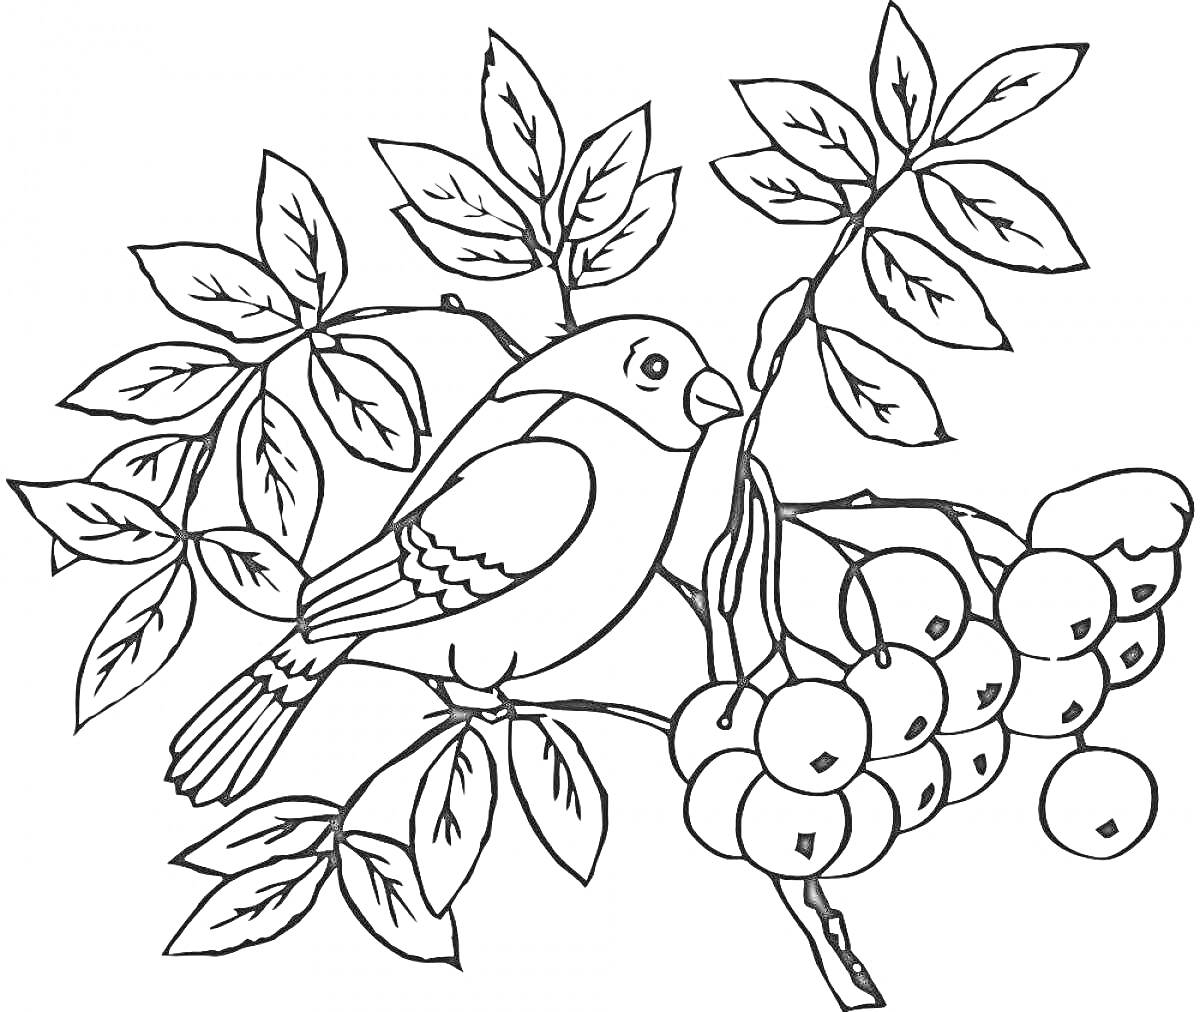 Раскраска Снегирь на ветке рябины с листьями и ягодами